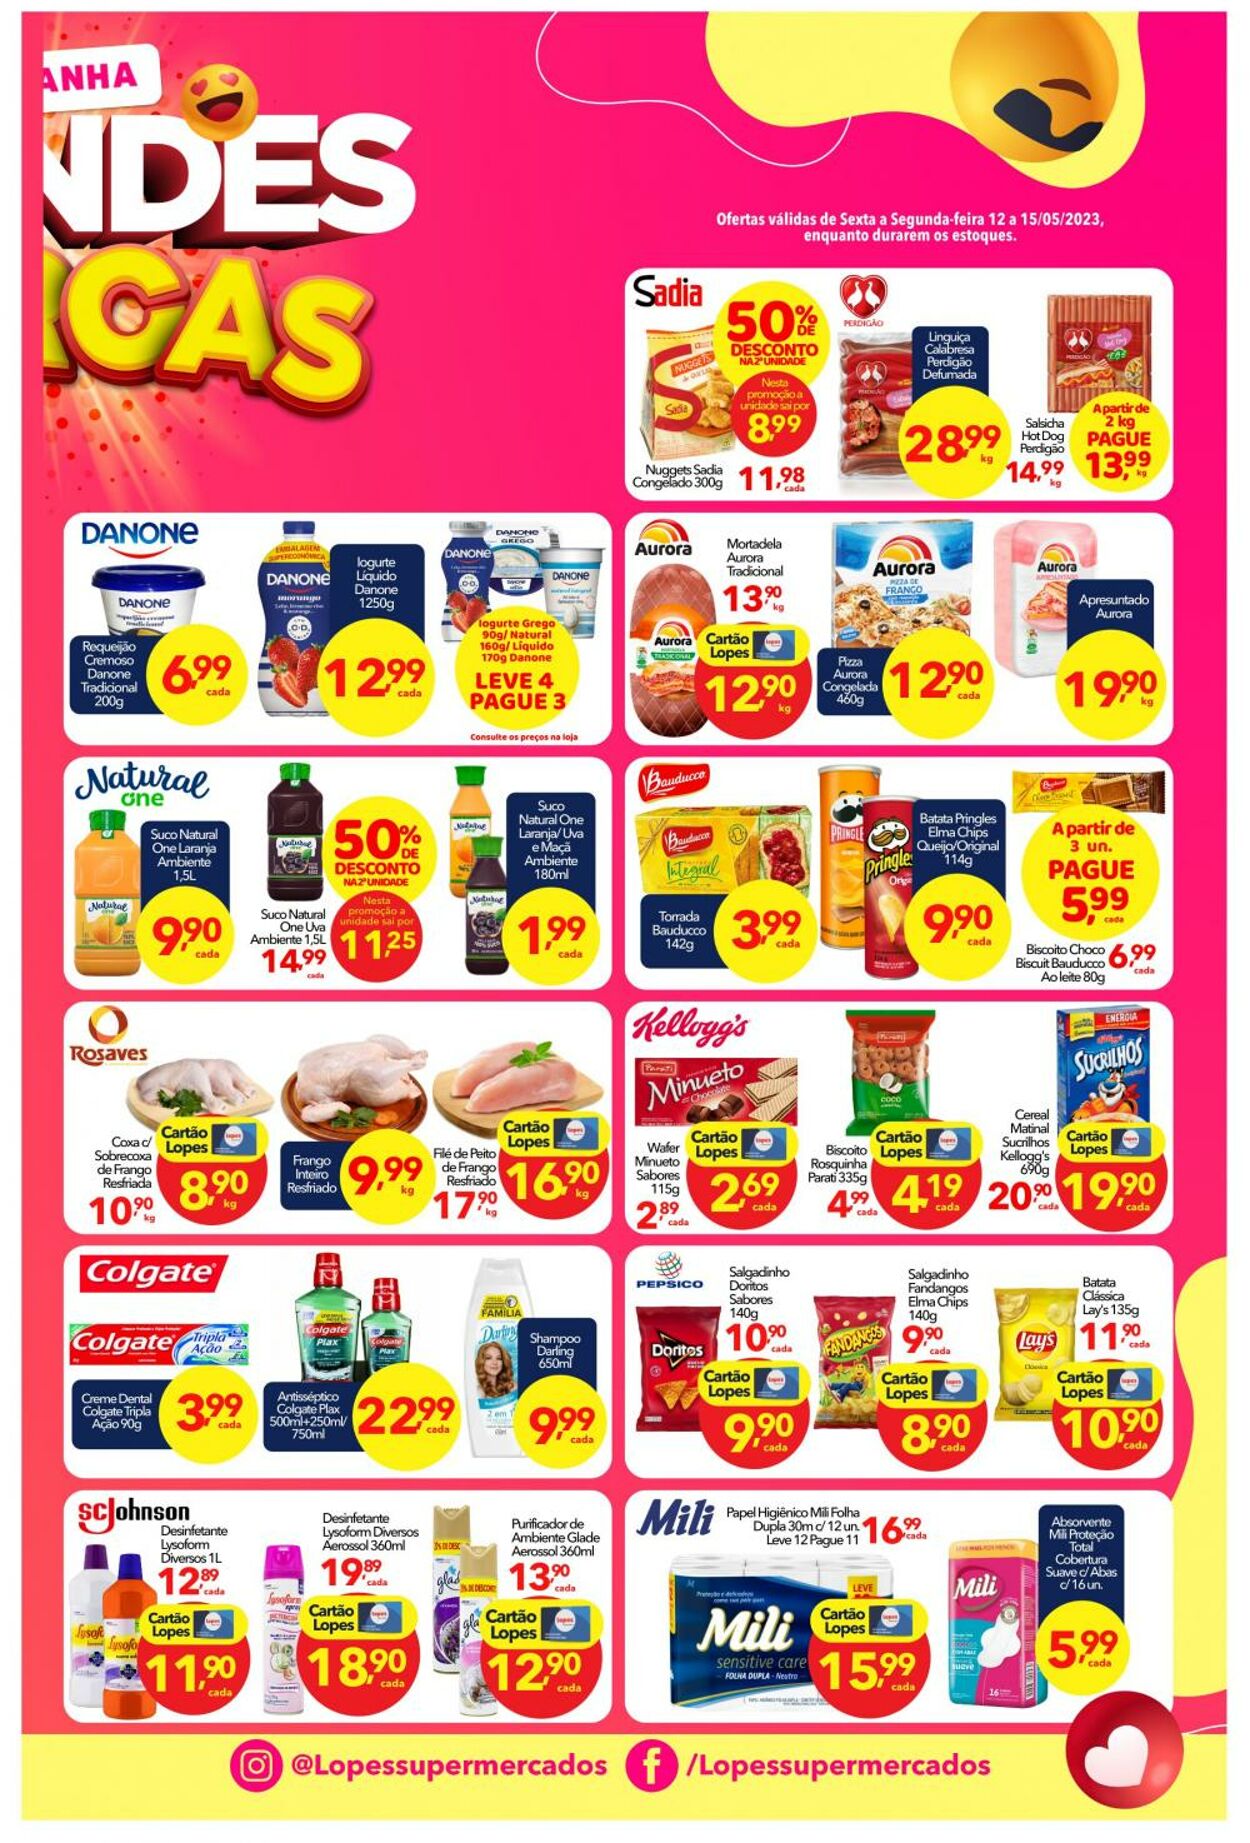 Folheto Lopes Supermercados 13.05.2023 - 16.05.2023